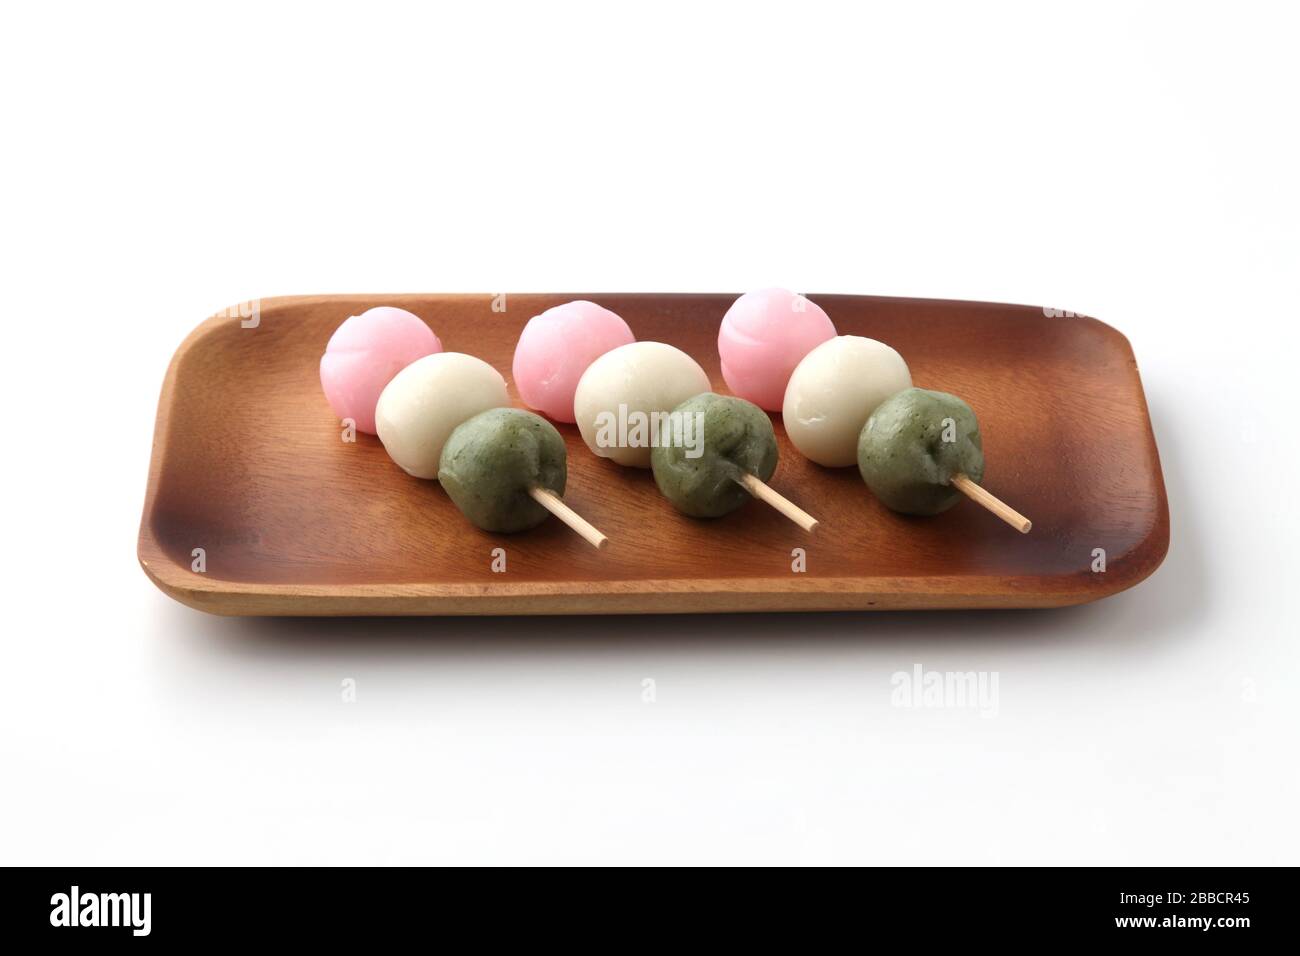 dango 3 torta di riso con gnocchi colorati pasticceria giapponese su piastra isolata su sfondo bianco Foto Stock